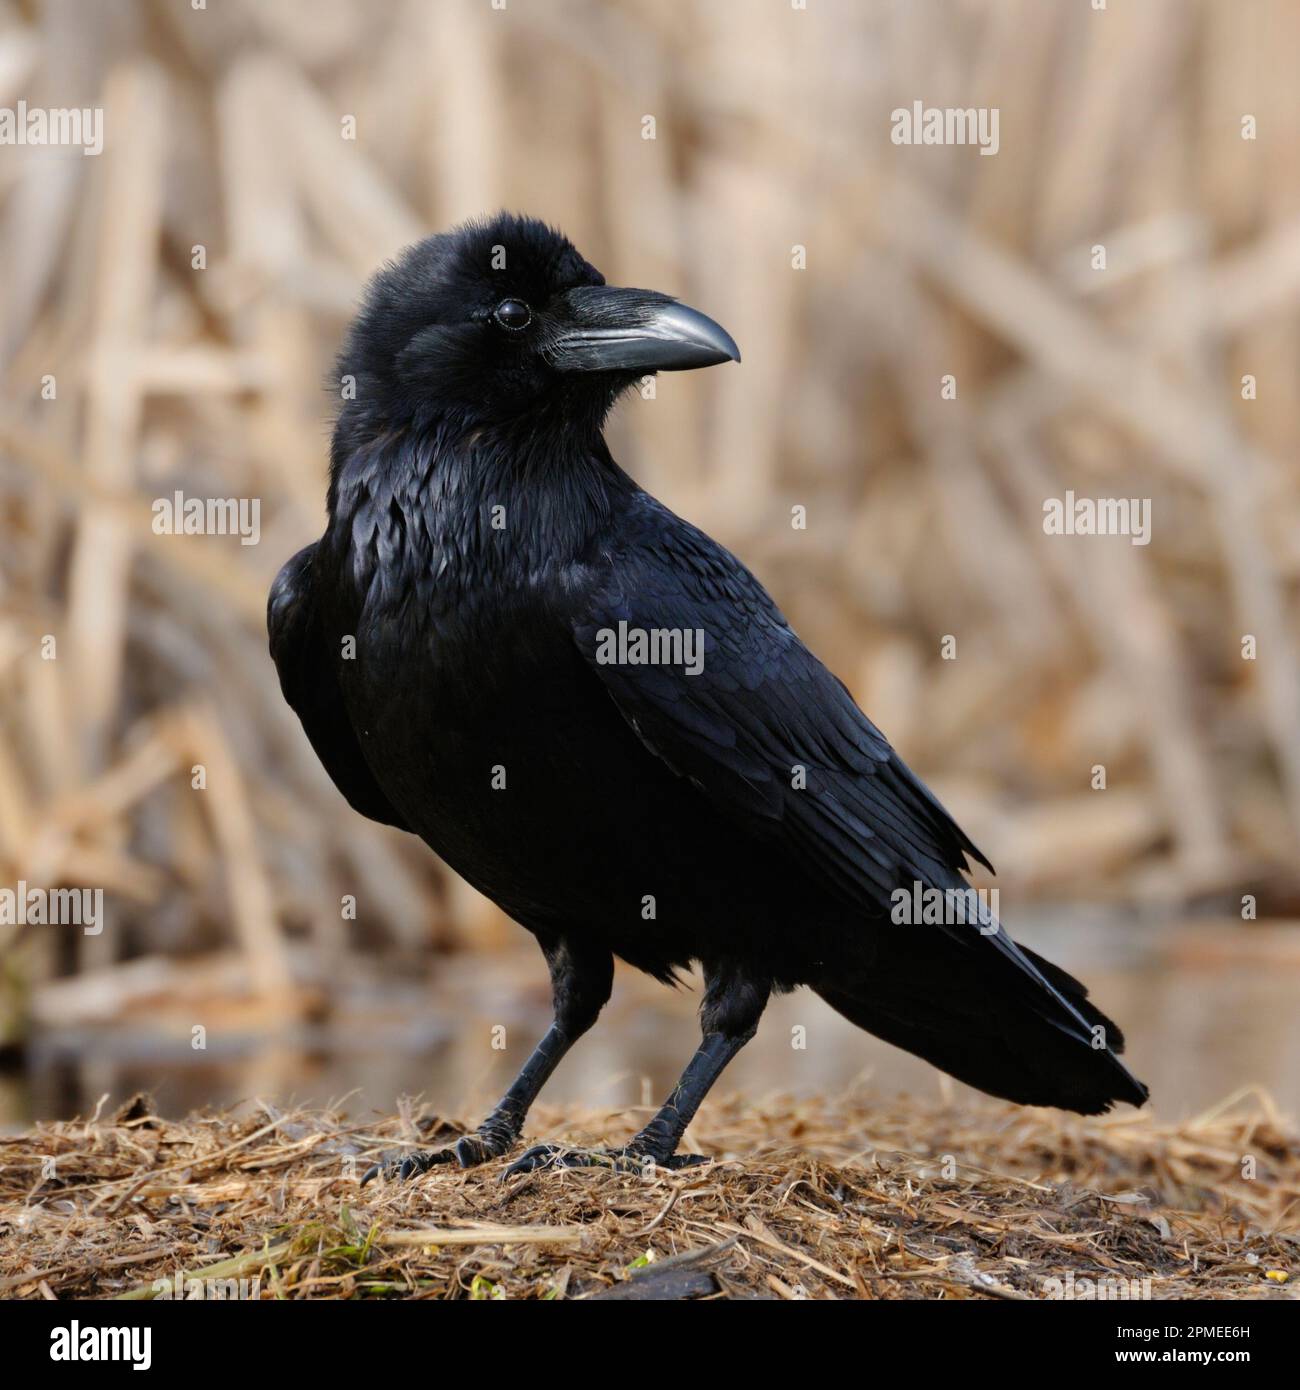 Grand Corbeau Corvus corax / Kolkrabe ( ) perché sur le terrain, descriptions close-up, noir brillant plumage, regardant attentivement, de la faune, de l'Europe. Banque D'Images